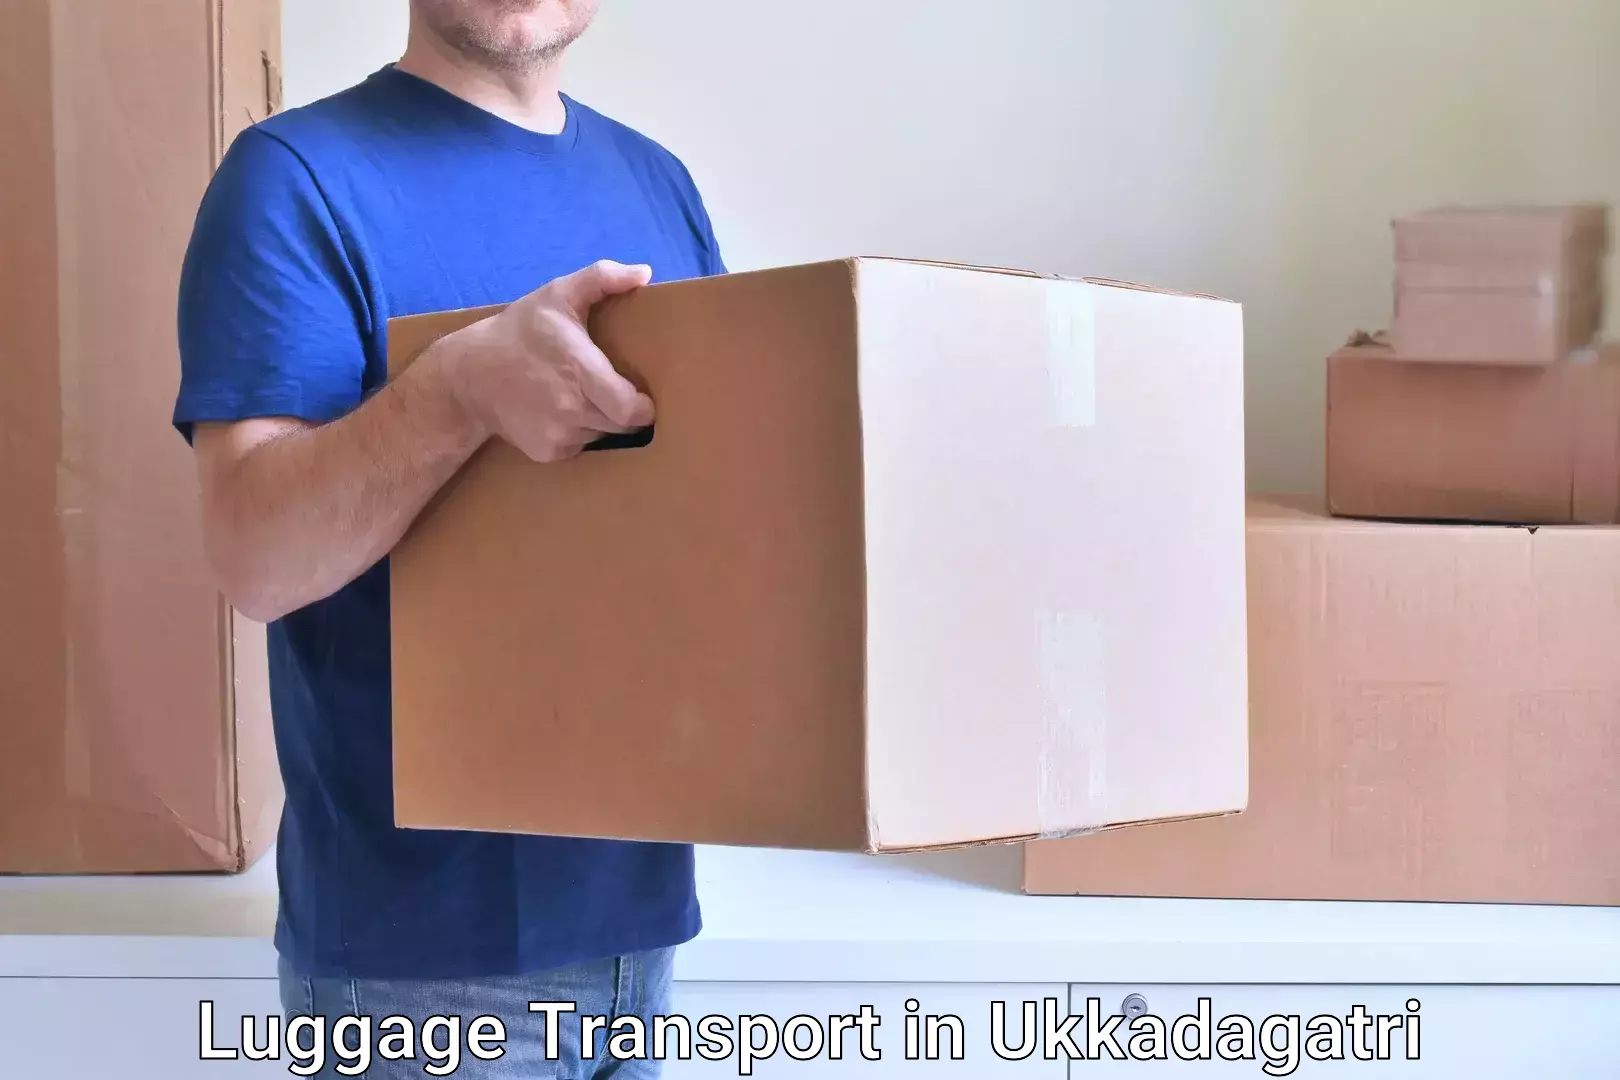 Corporate baggage transport in Ukkadagatri